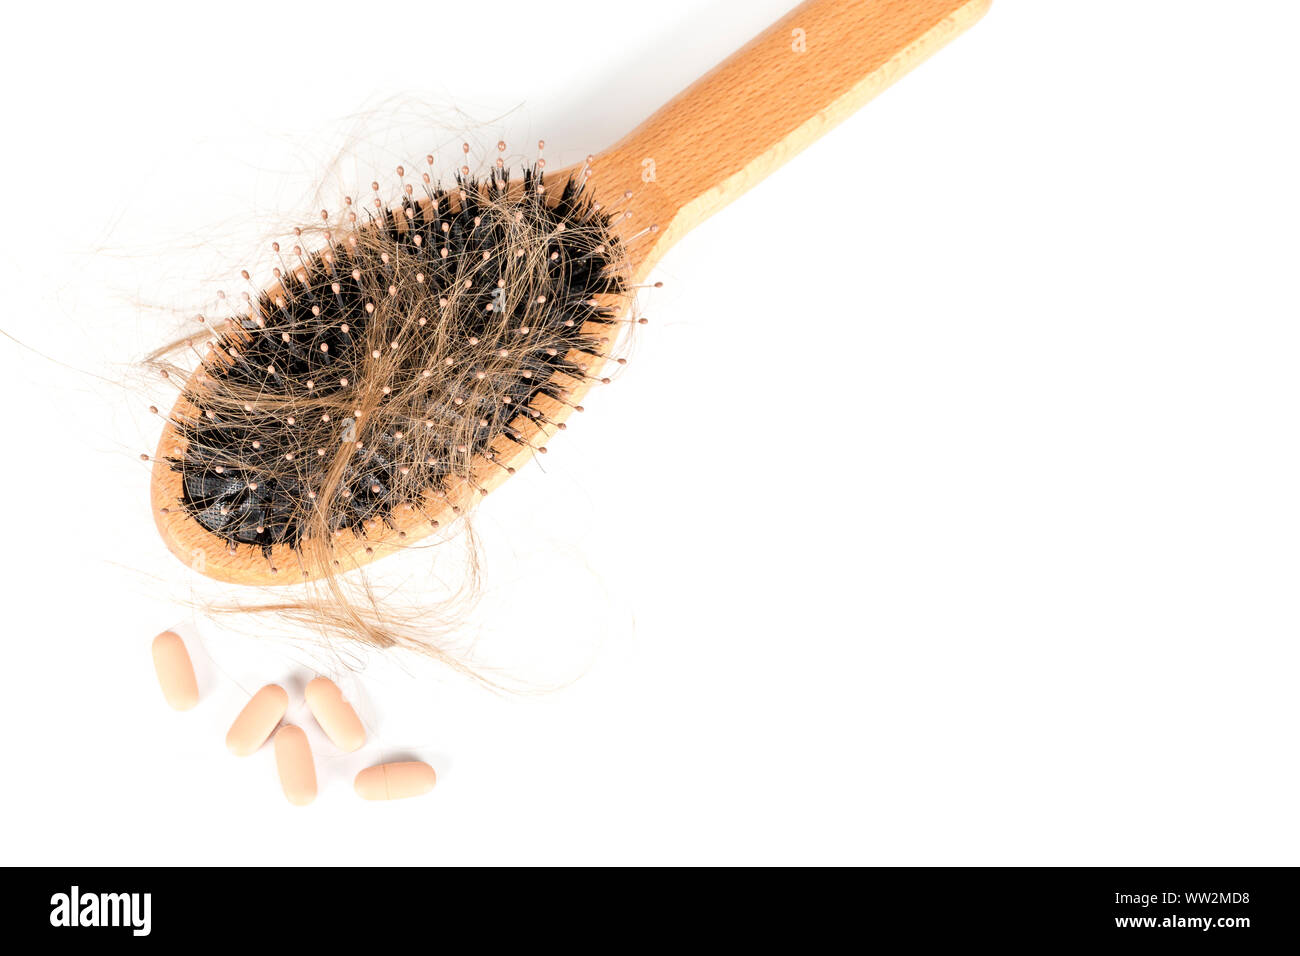 Holz Haarbürste auf weißem Hintergrund. Close-up mit langen braunen Haaren und Tabletten Haarausfall Behandlung Medizin veranschaulichen. Haarausfall Problem. Gesundheit ca Stockfoto